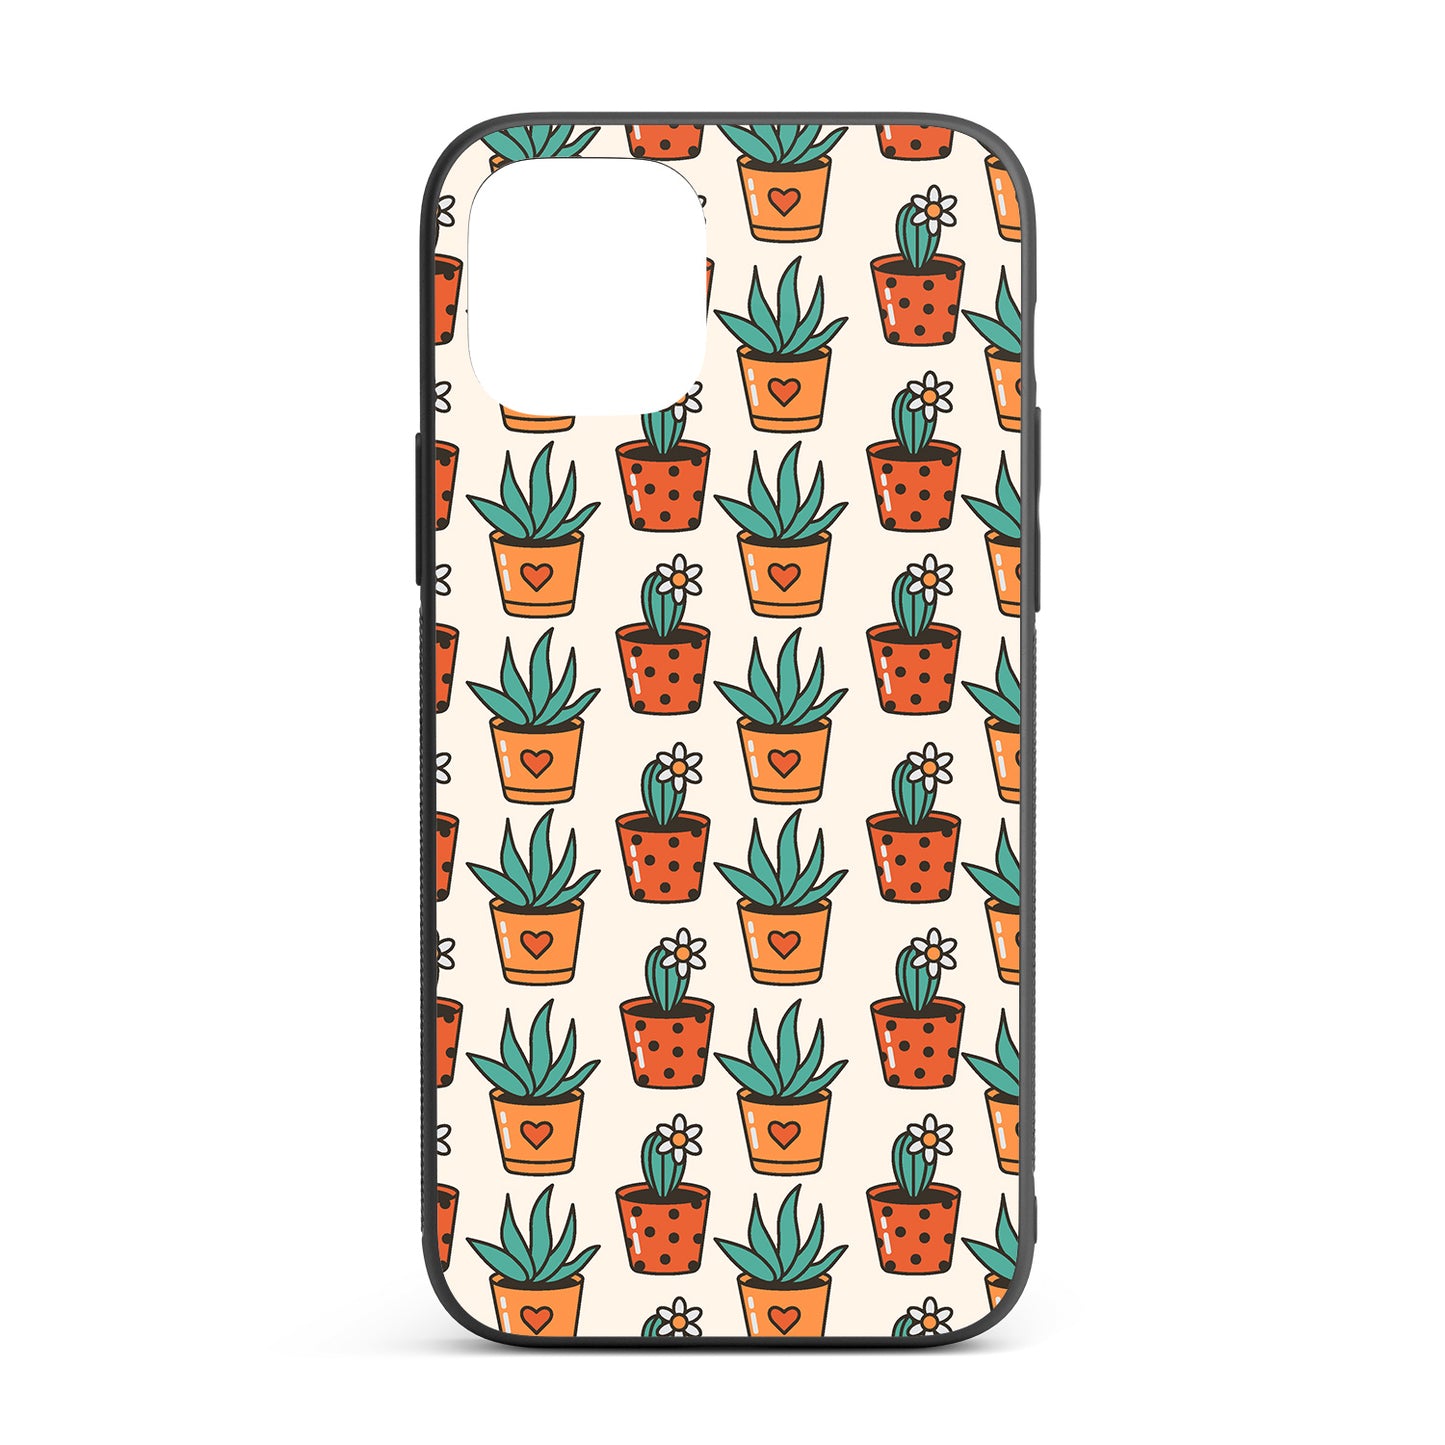 Cactus iPhone glass case